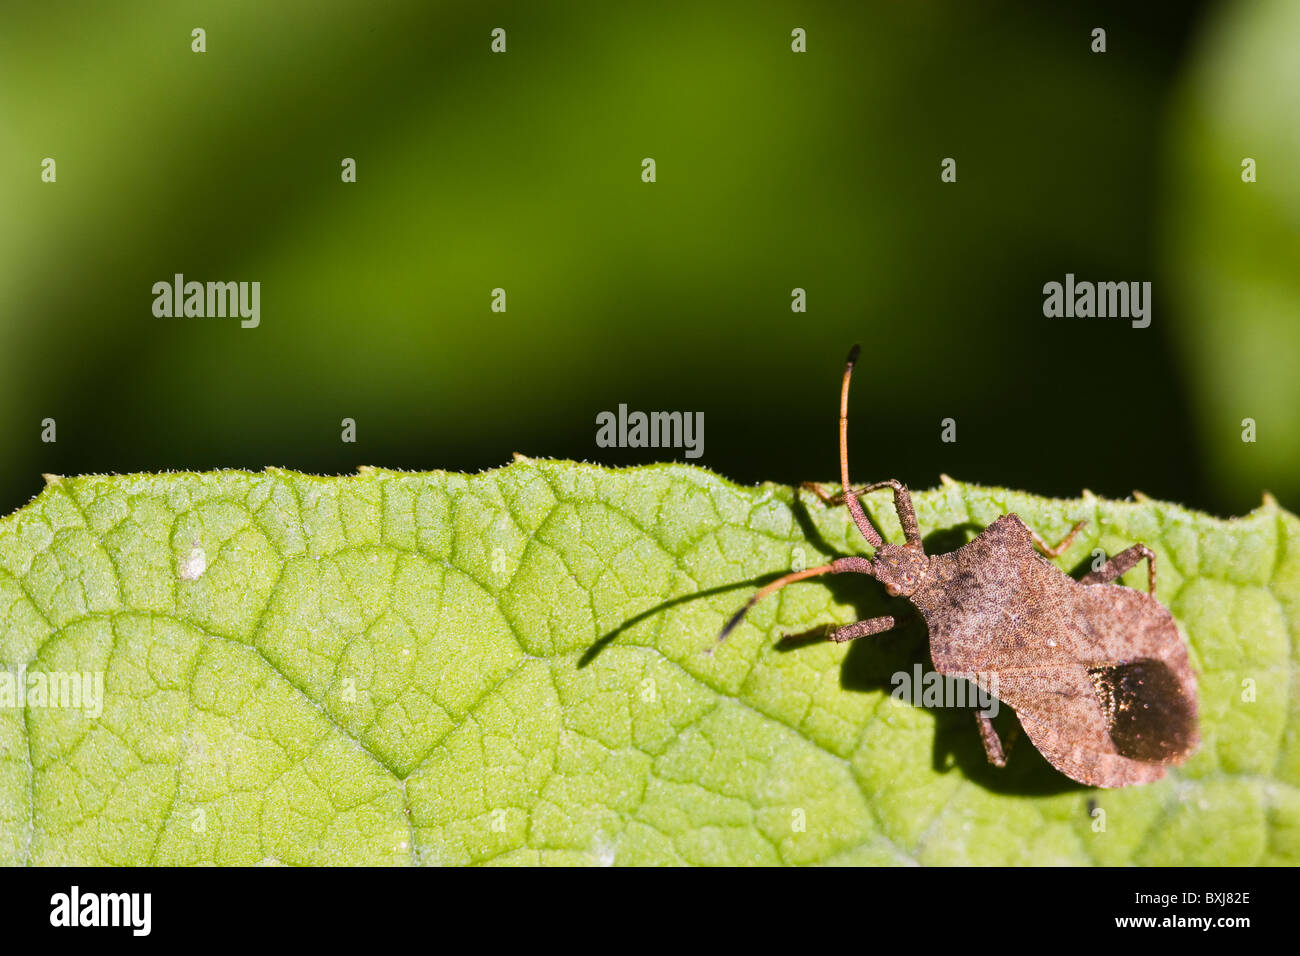 squash bug (Coreus marginatus) Stock Photo